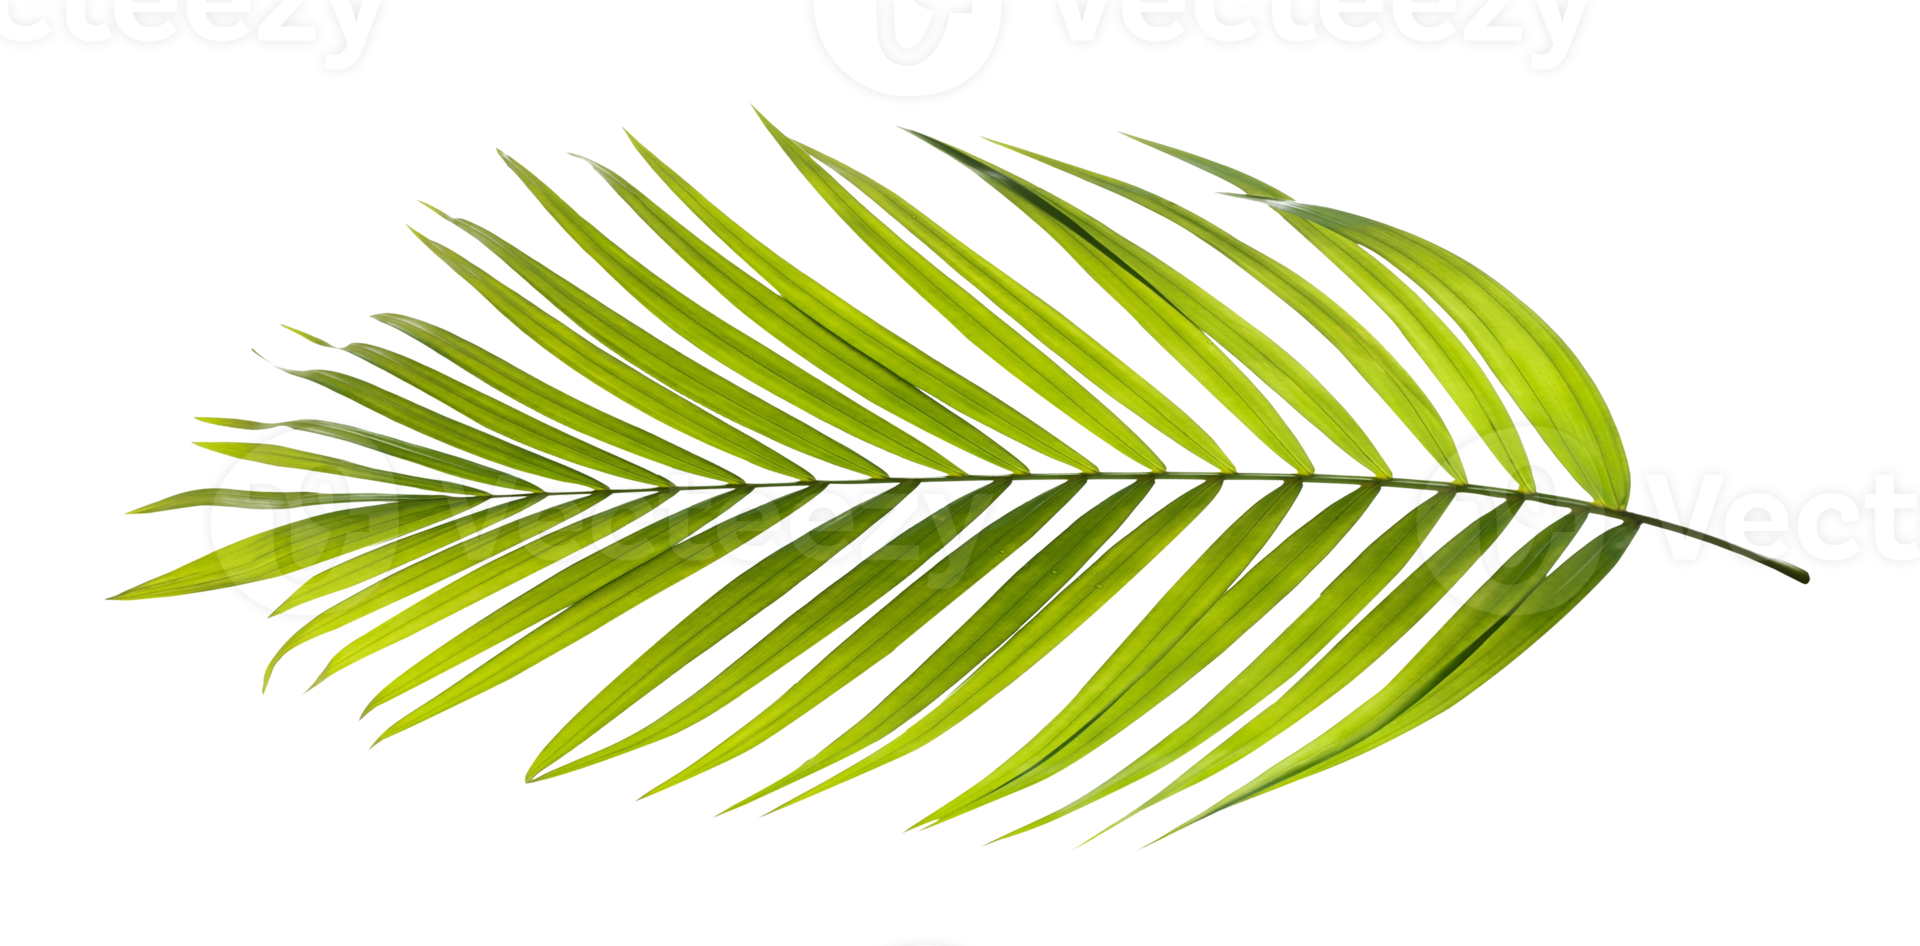 folha verde de palmeira no arquivo png de fundo transparente